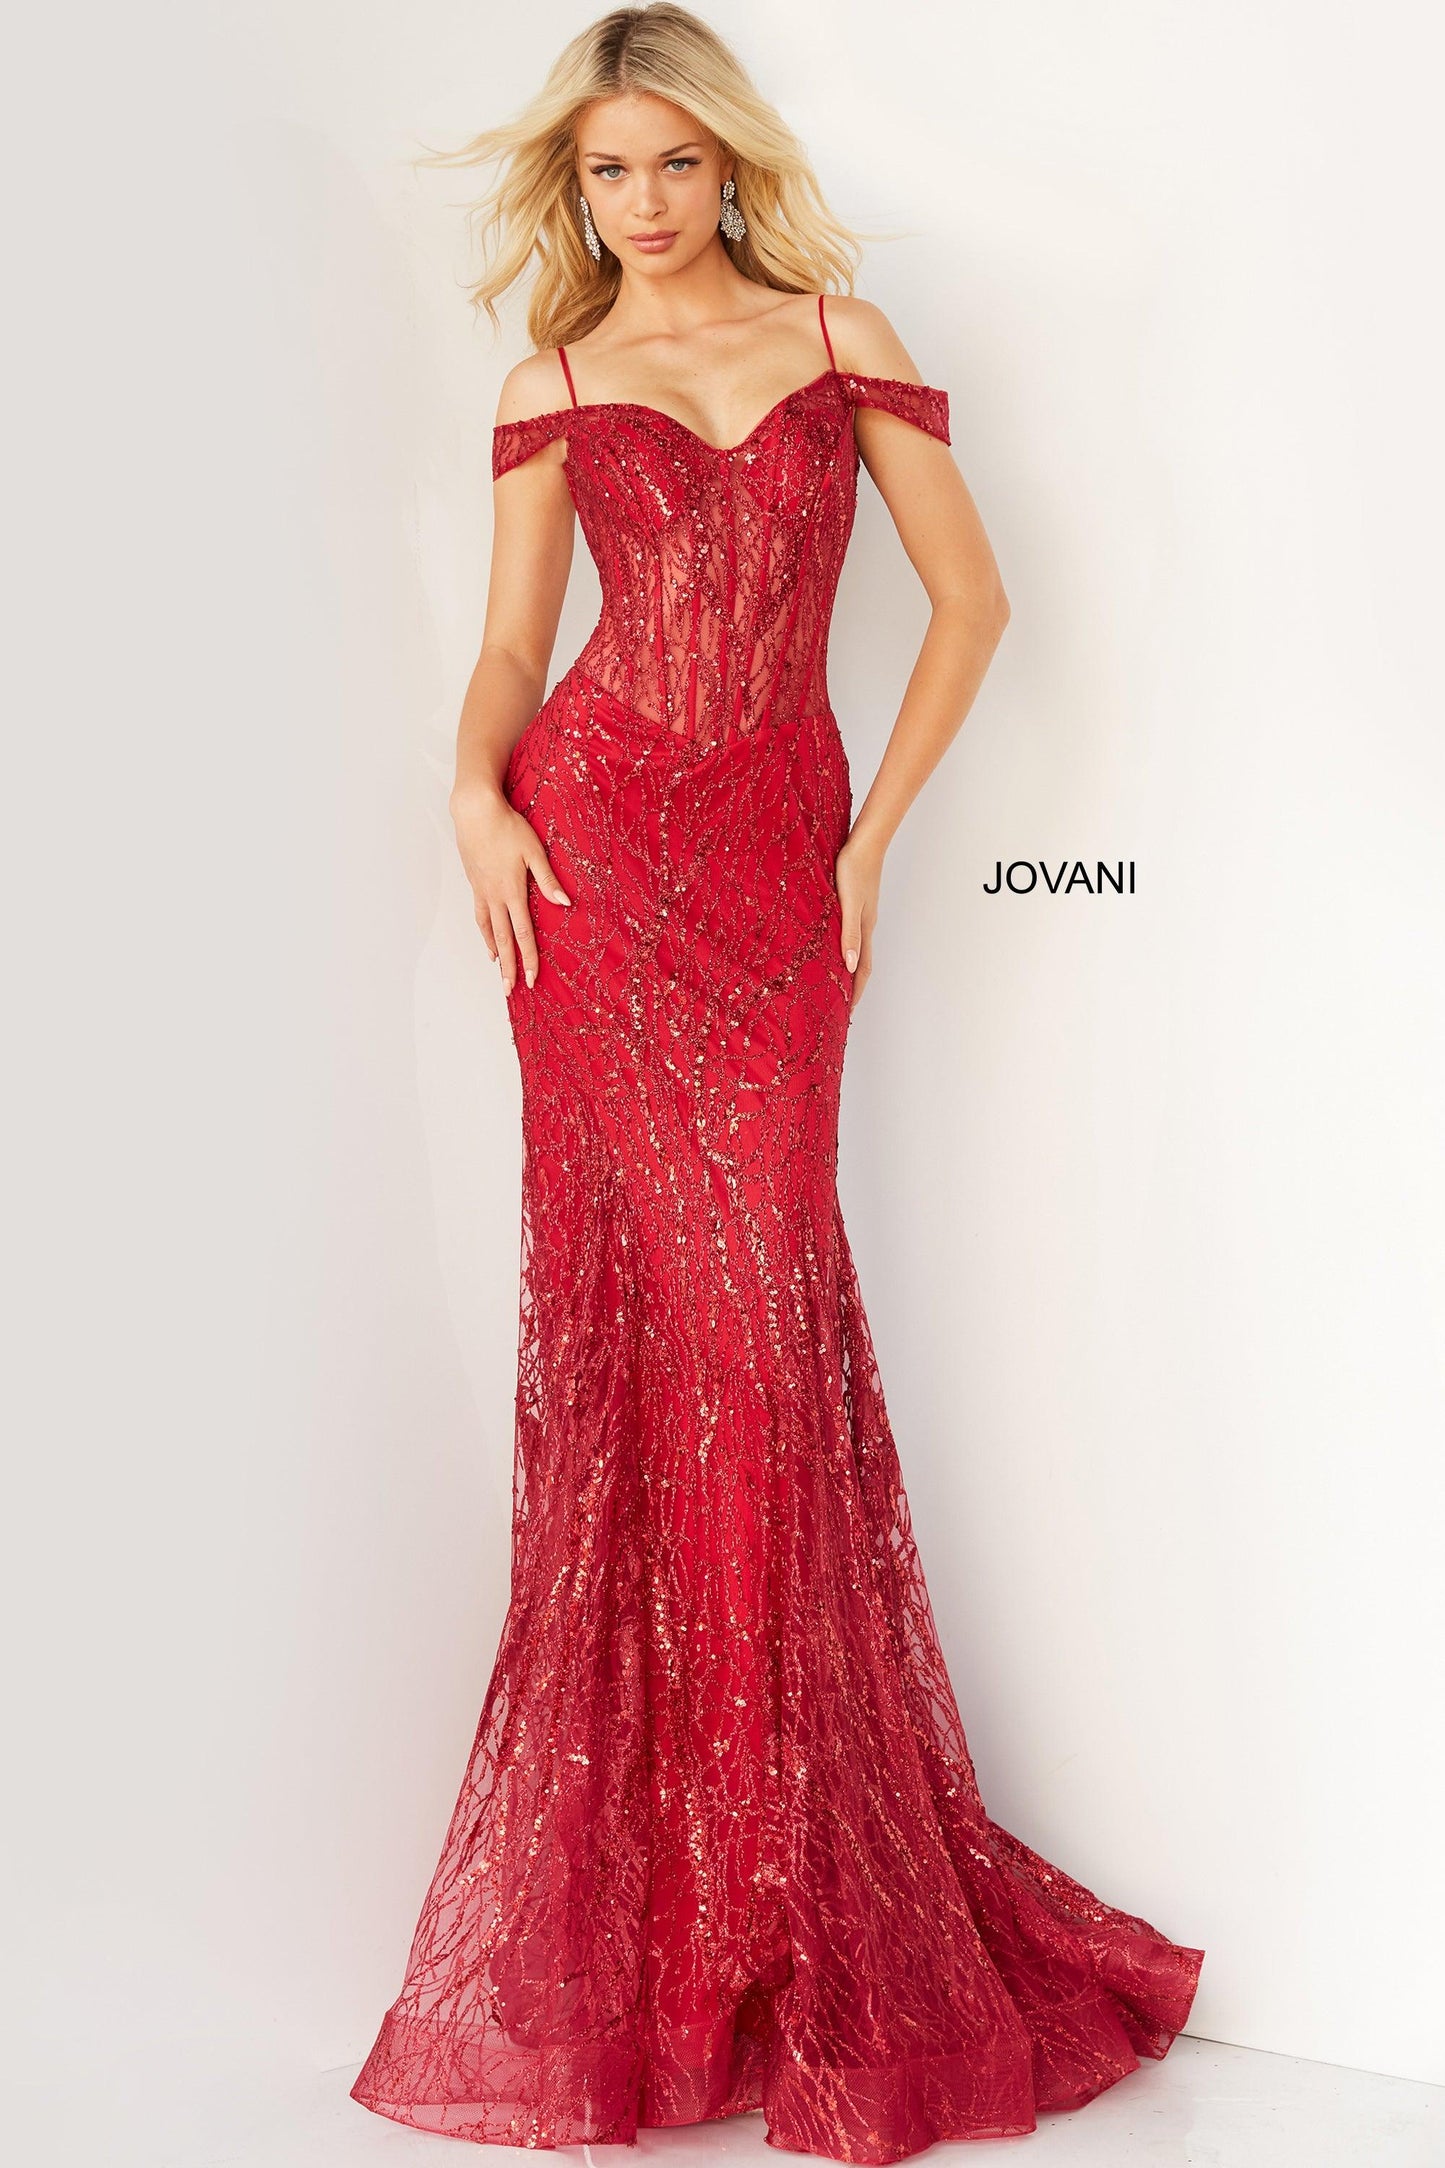 Jovani Prom Off Shoulder Long Formal Gown 05838 - The Dress Outlet